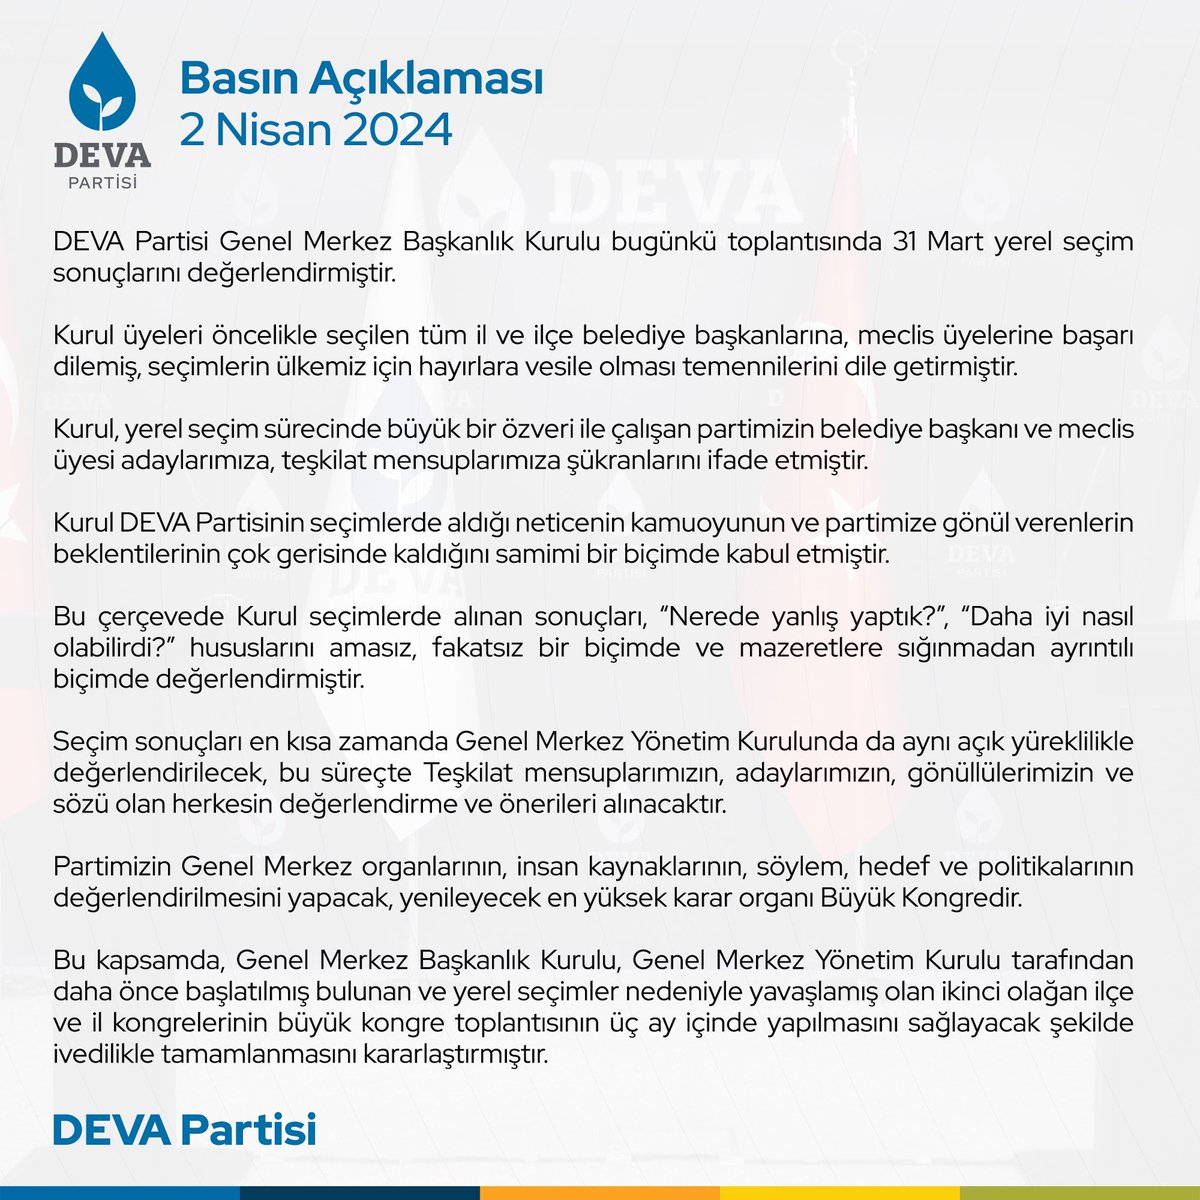 DEVA’da GMBK toplandı DEVA Partisi Genel Merkez Başkanlık Kurulu, Genel Başkan Ali Babacan başkanlığında 31 Mart Yerel Seçim sonuçlarını değerlendirmek üzere partinin Ankara'daki genel merkezinde toplandı. 15.00’de başlayan toplantı, 00.30’da sona erdi. Gerçekleştirilen…